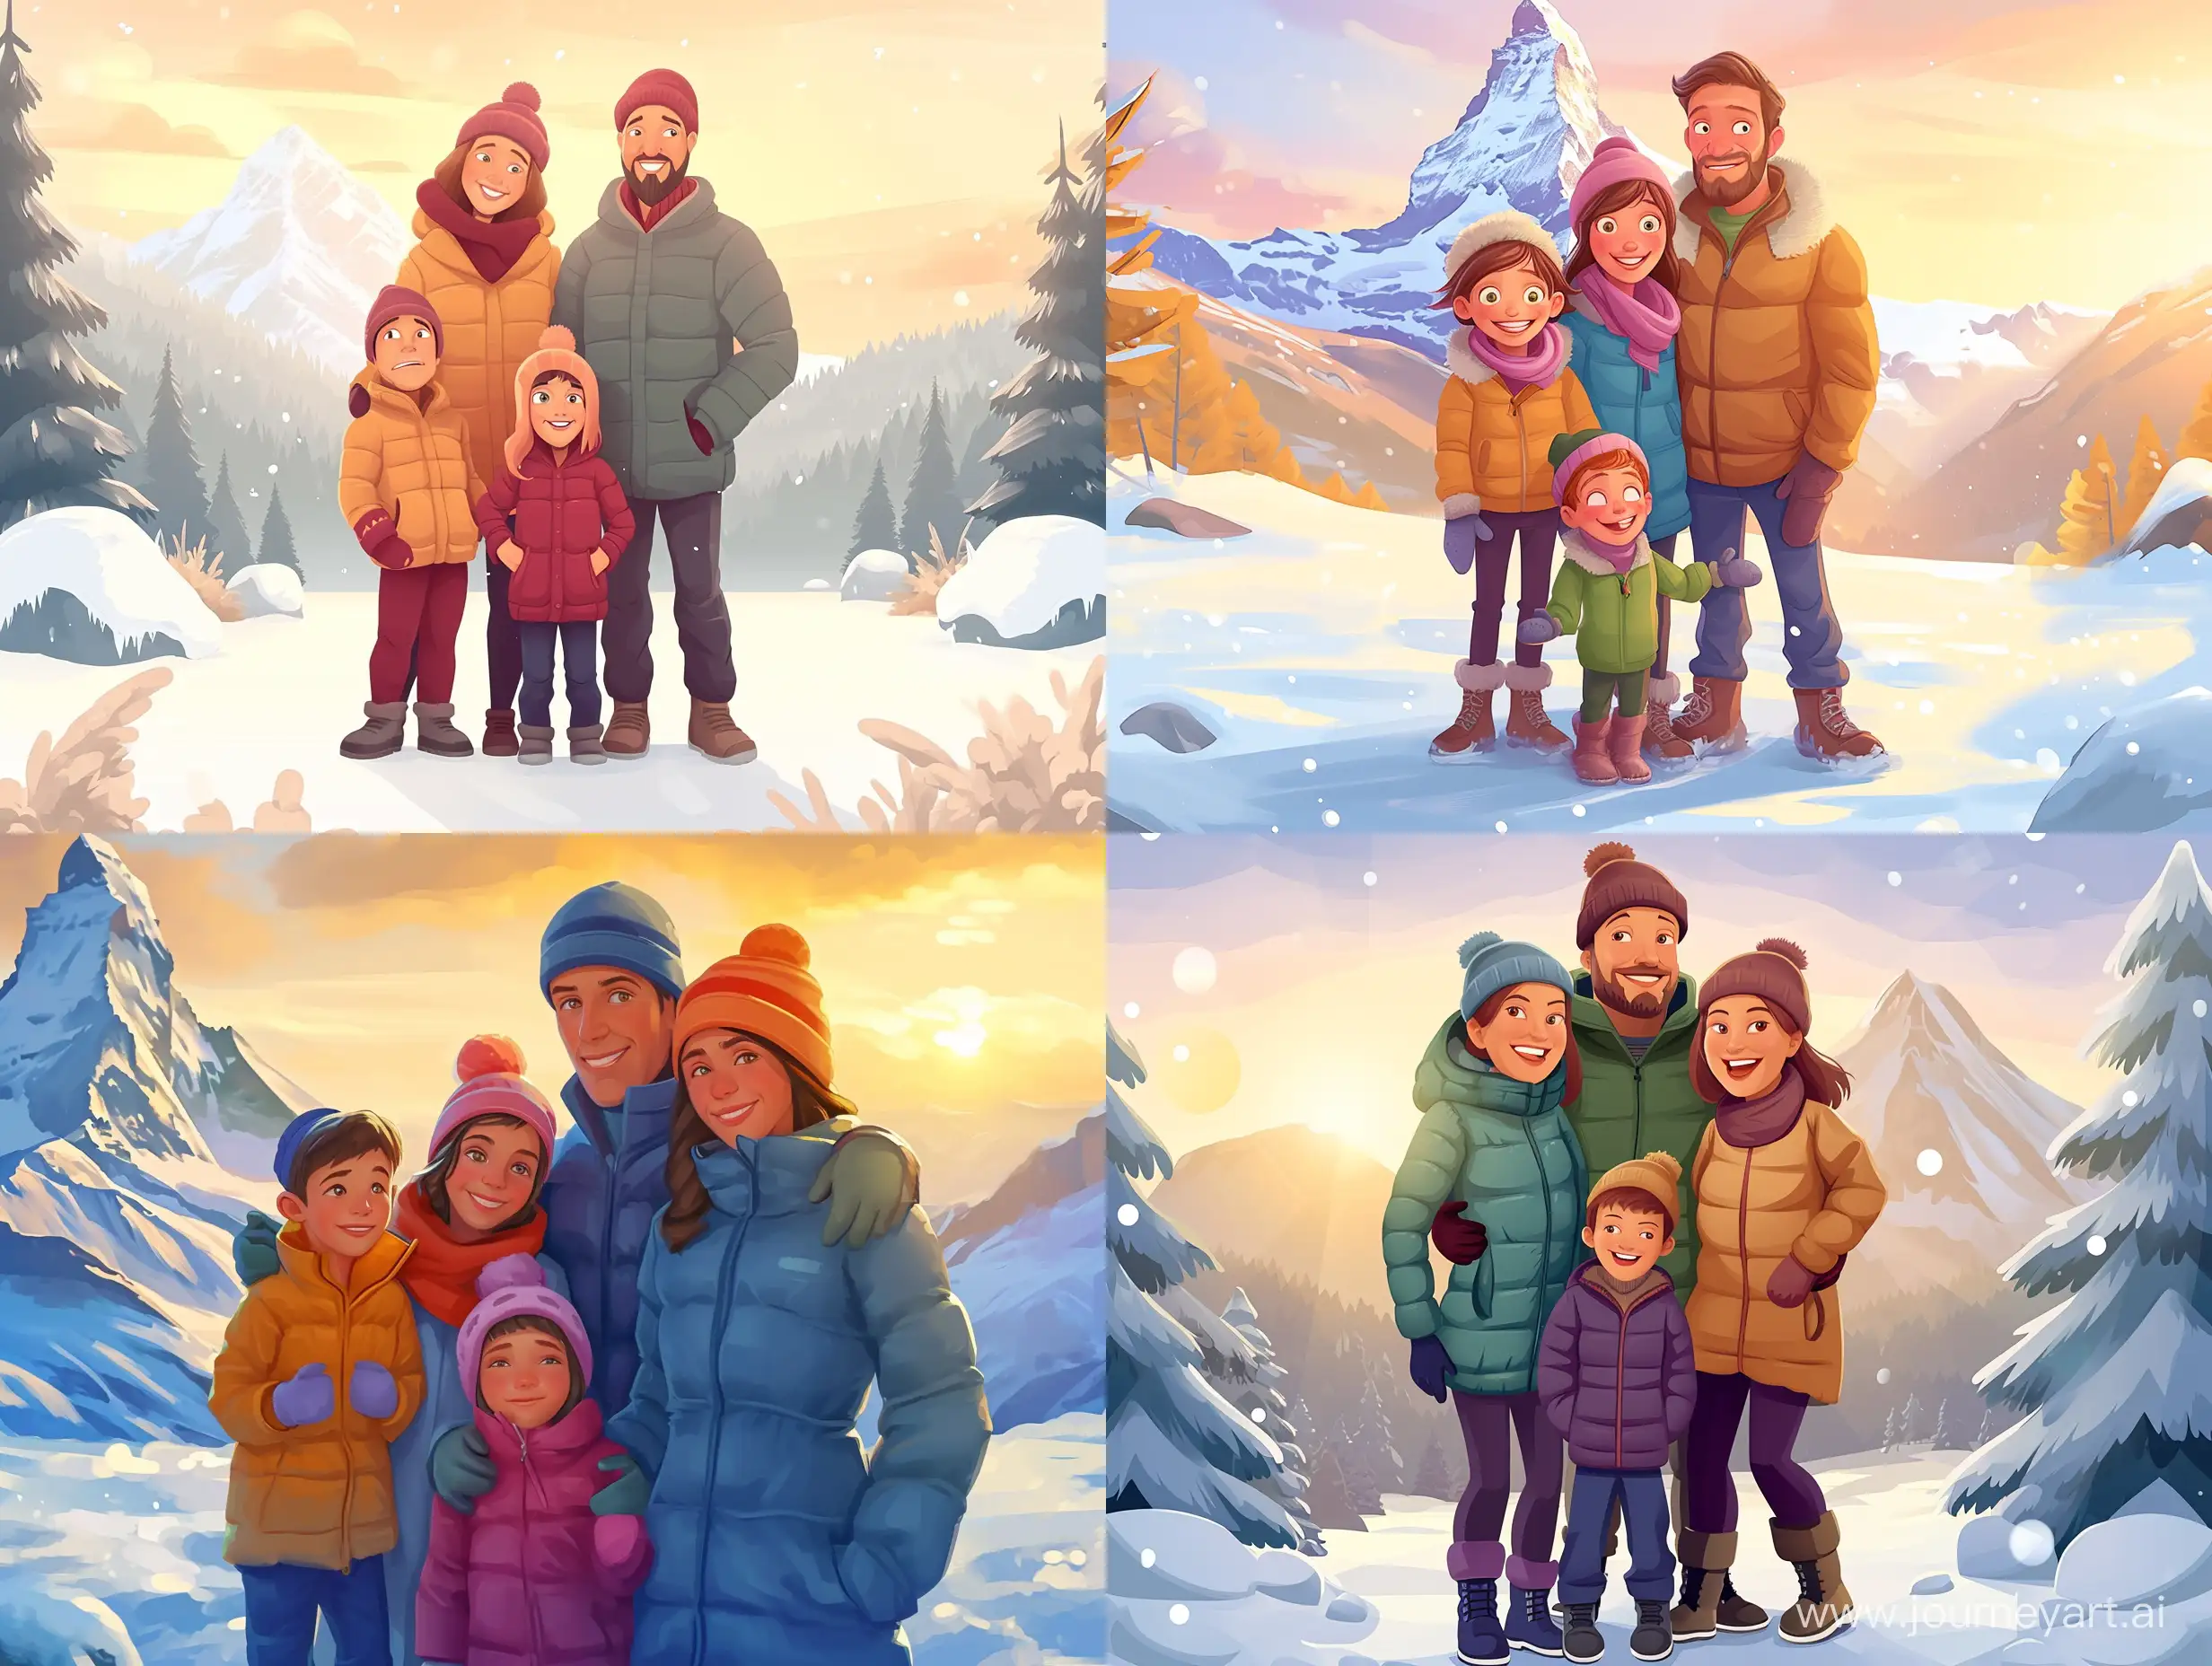 Pixar Cartoon style of  Портрет счастливой семьи на фоне живописного зимнего пейзажа. Мама, папа и двое детей (мальчик и девочка лет 7-10) в теплой зимней одежде - пуховиках, шапках, варежках и сапогах. Вдали виднеется заснеженная горная вершина, отражающая лучи заходящего солнца. Семья радуется хорошей погоде. Используй мягкий свет, идеальную композицию и интересный ракурс."